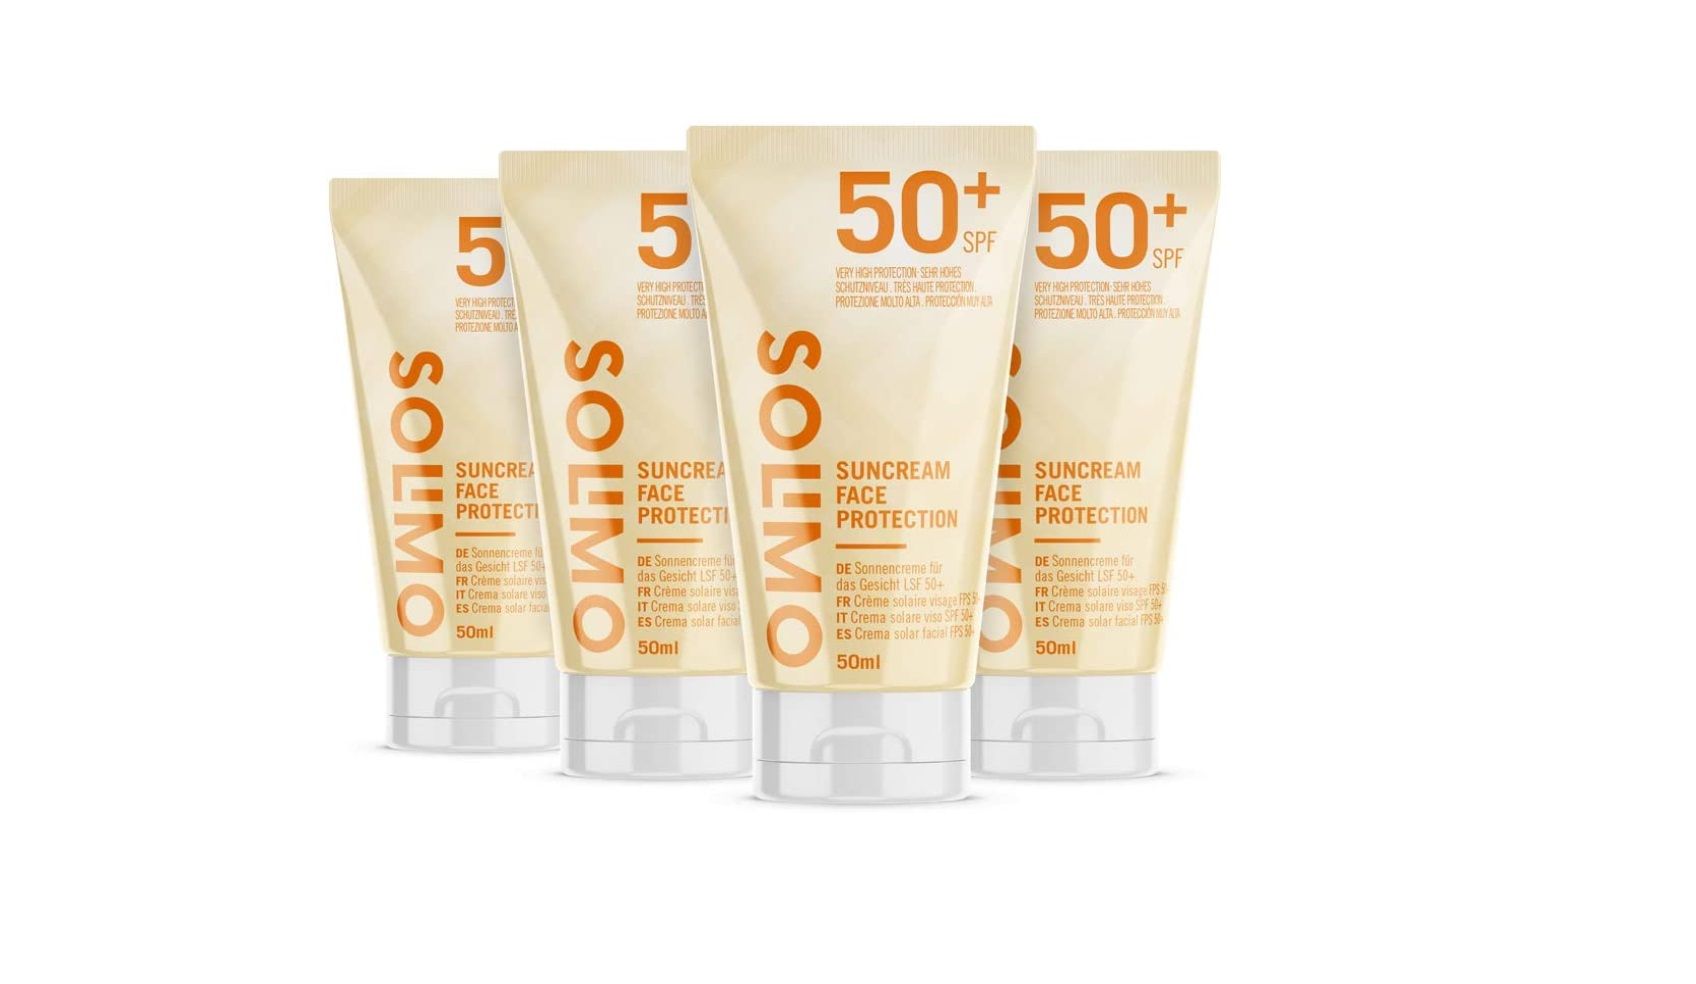 Pack de 4 cremas solares faciales Solimo FPS 50+